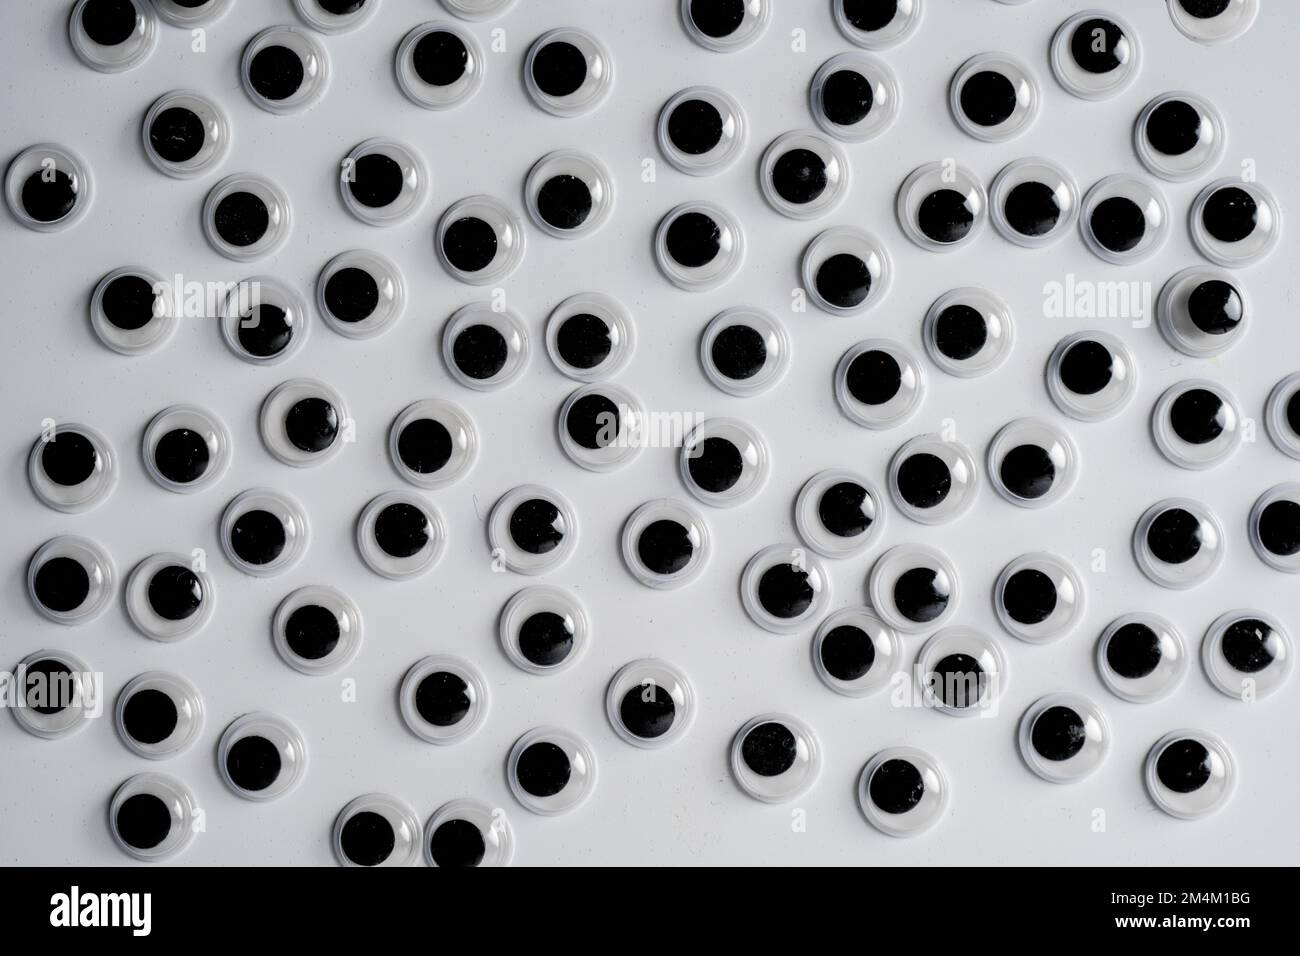 arrangement des yeux googly isolés sur un fond blanc Banque D'Images